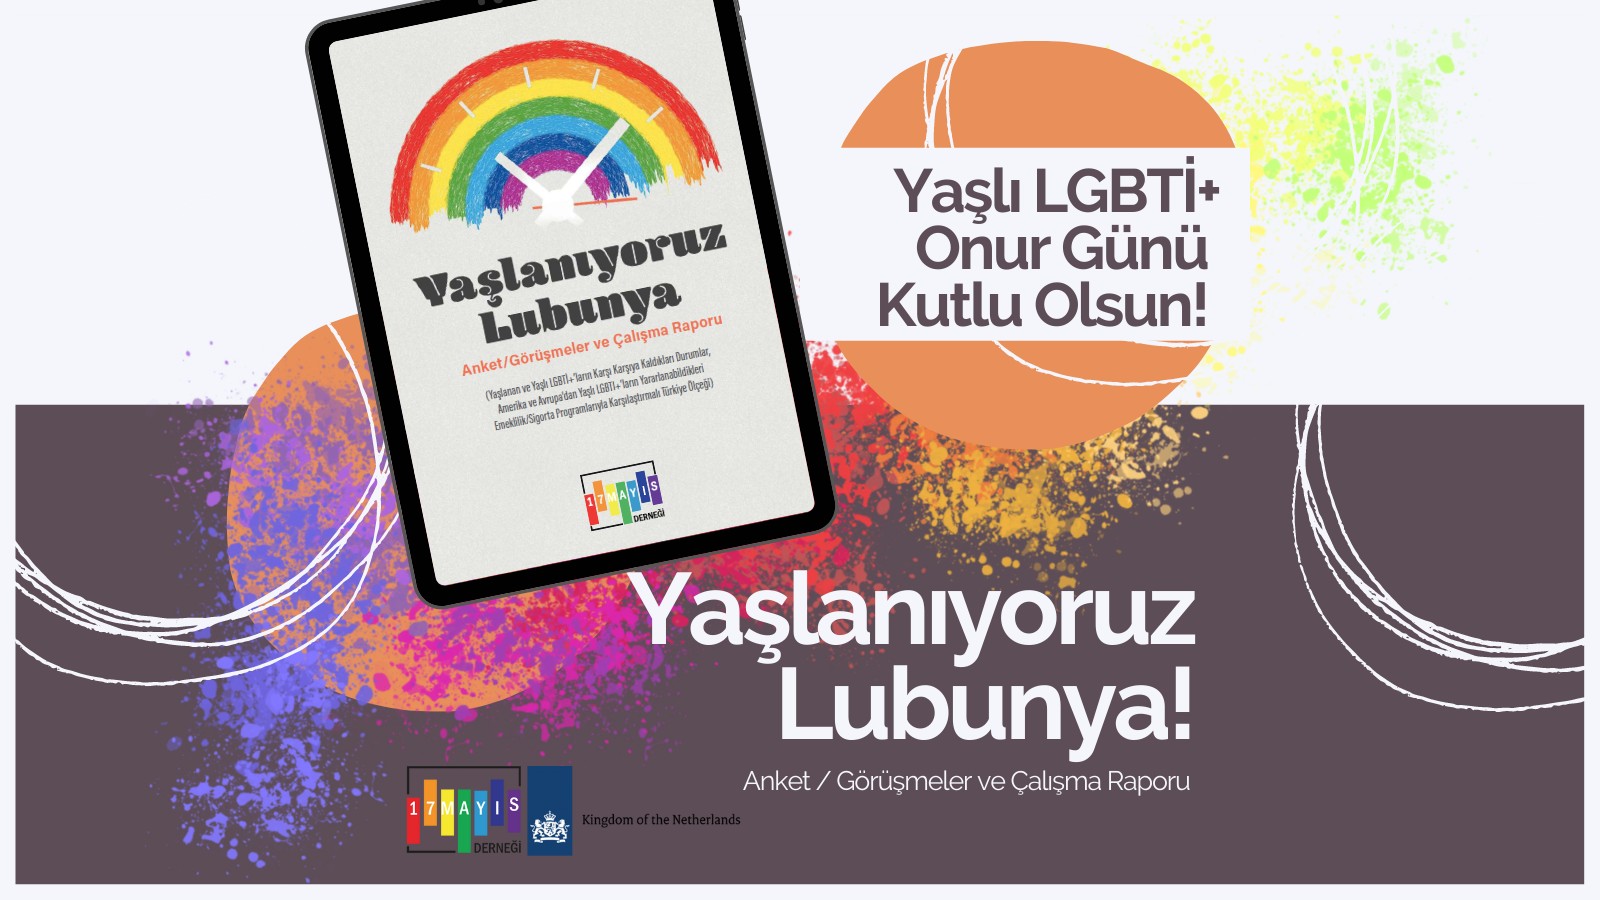 16 Mayıs Yaşlı LGBTİ+ Onur Günü Hediyesi 17 Mayıs’tan: "Yaşlanıyoruz Lubunya!" Kaos GL - LGBTİ+ Haber Portalı